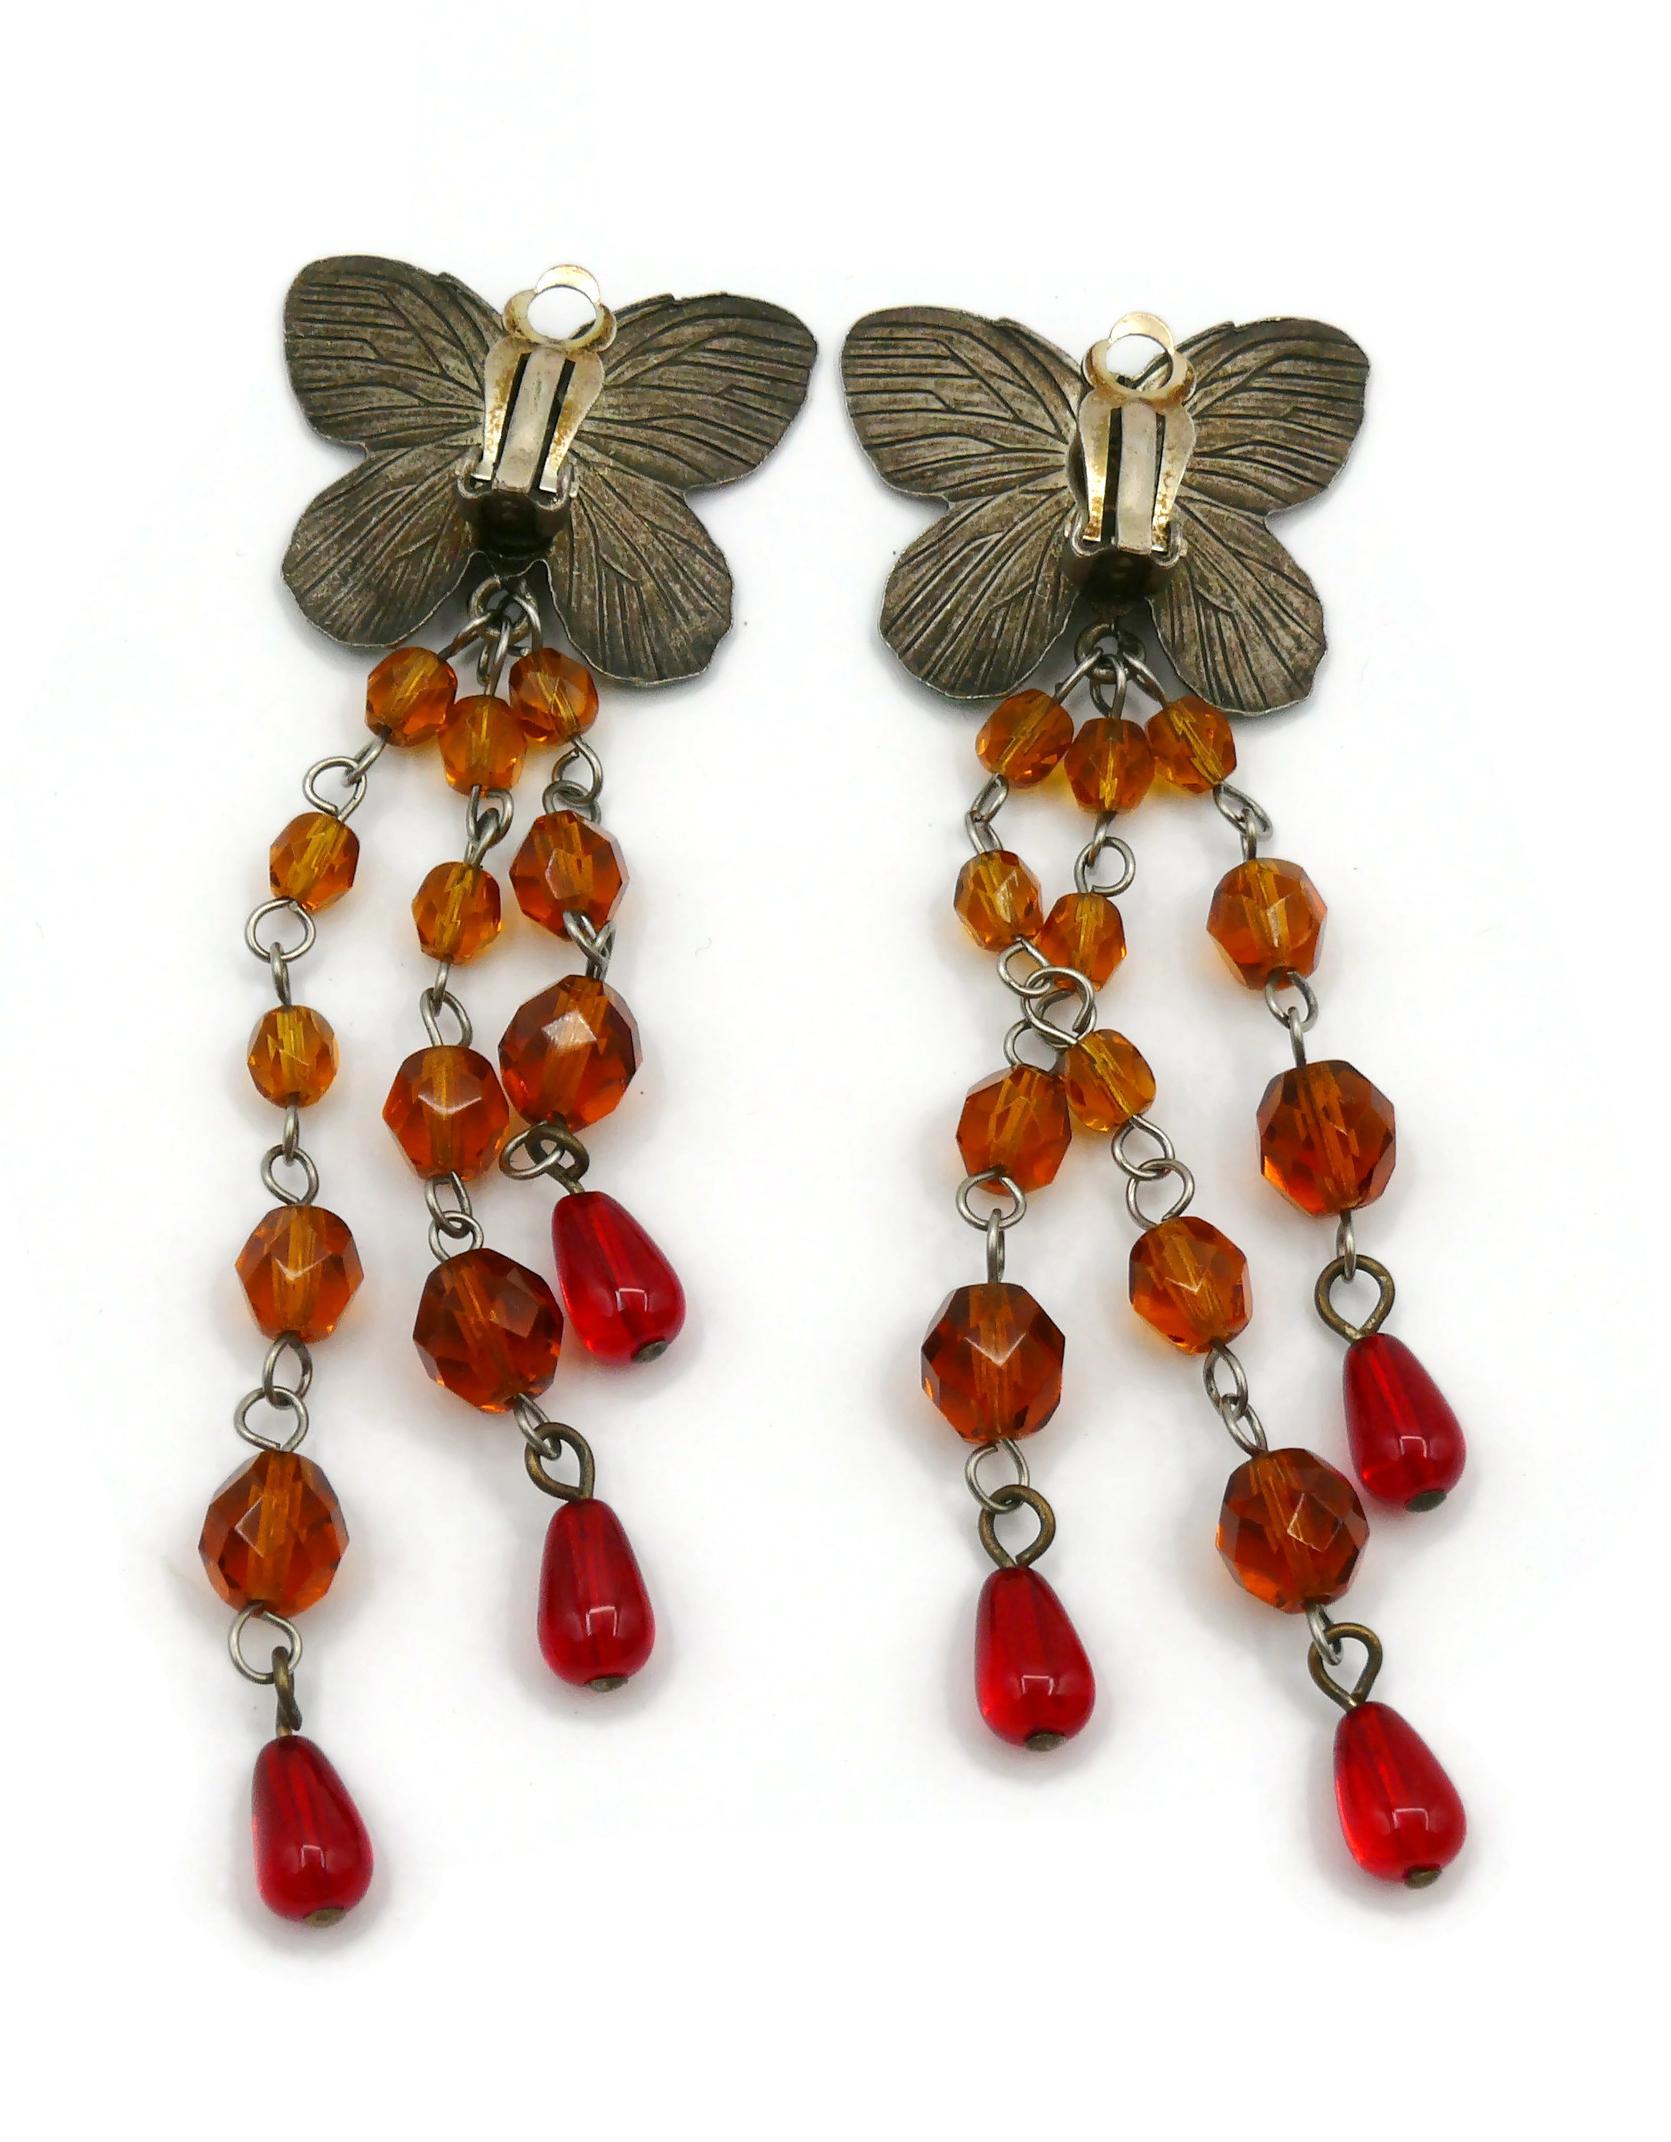 JEAN PAUL GAULTIER Vintage Enamel Butterfly Dangling Earrings 2